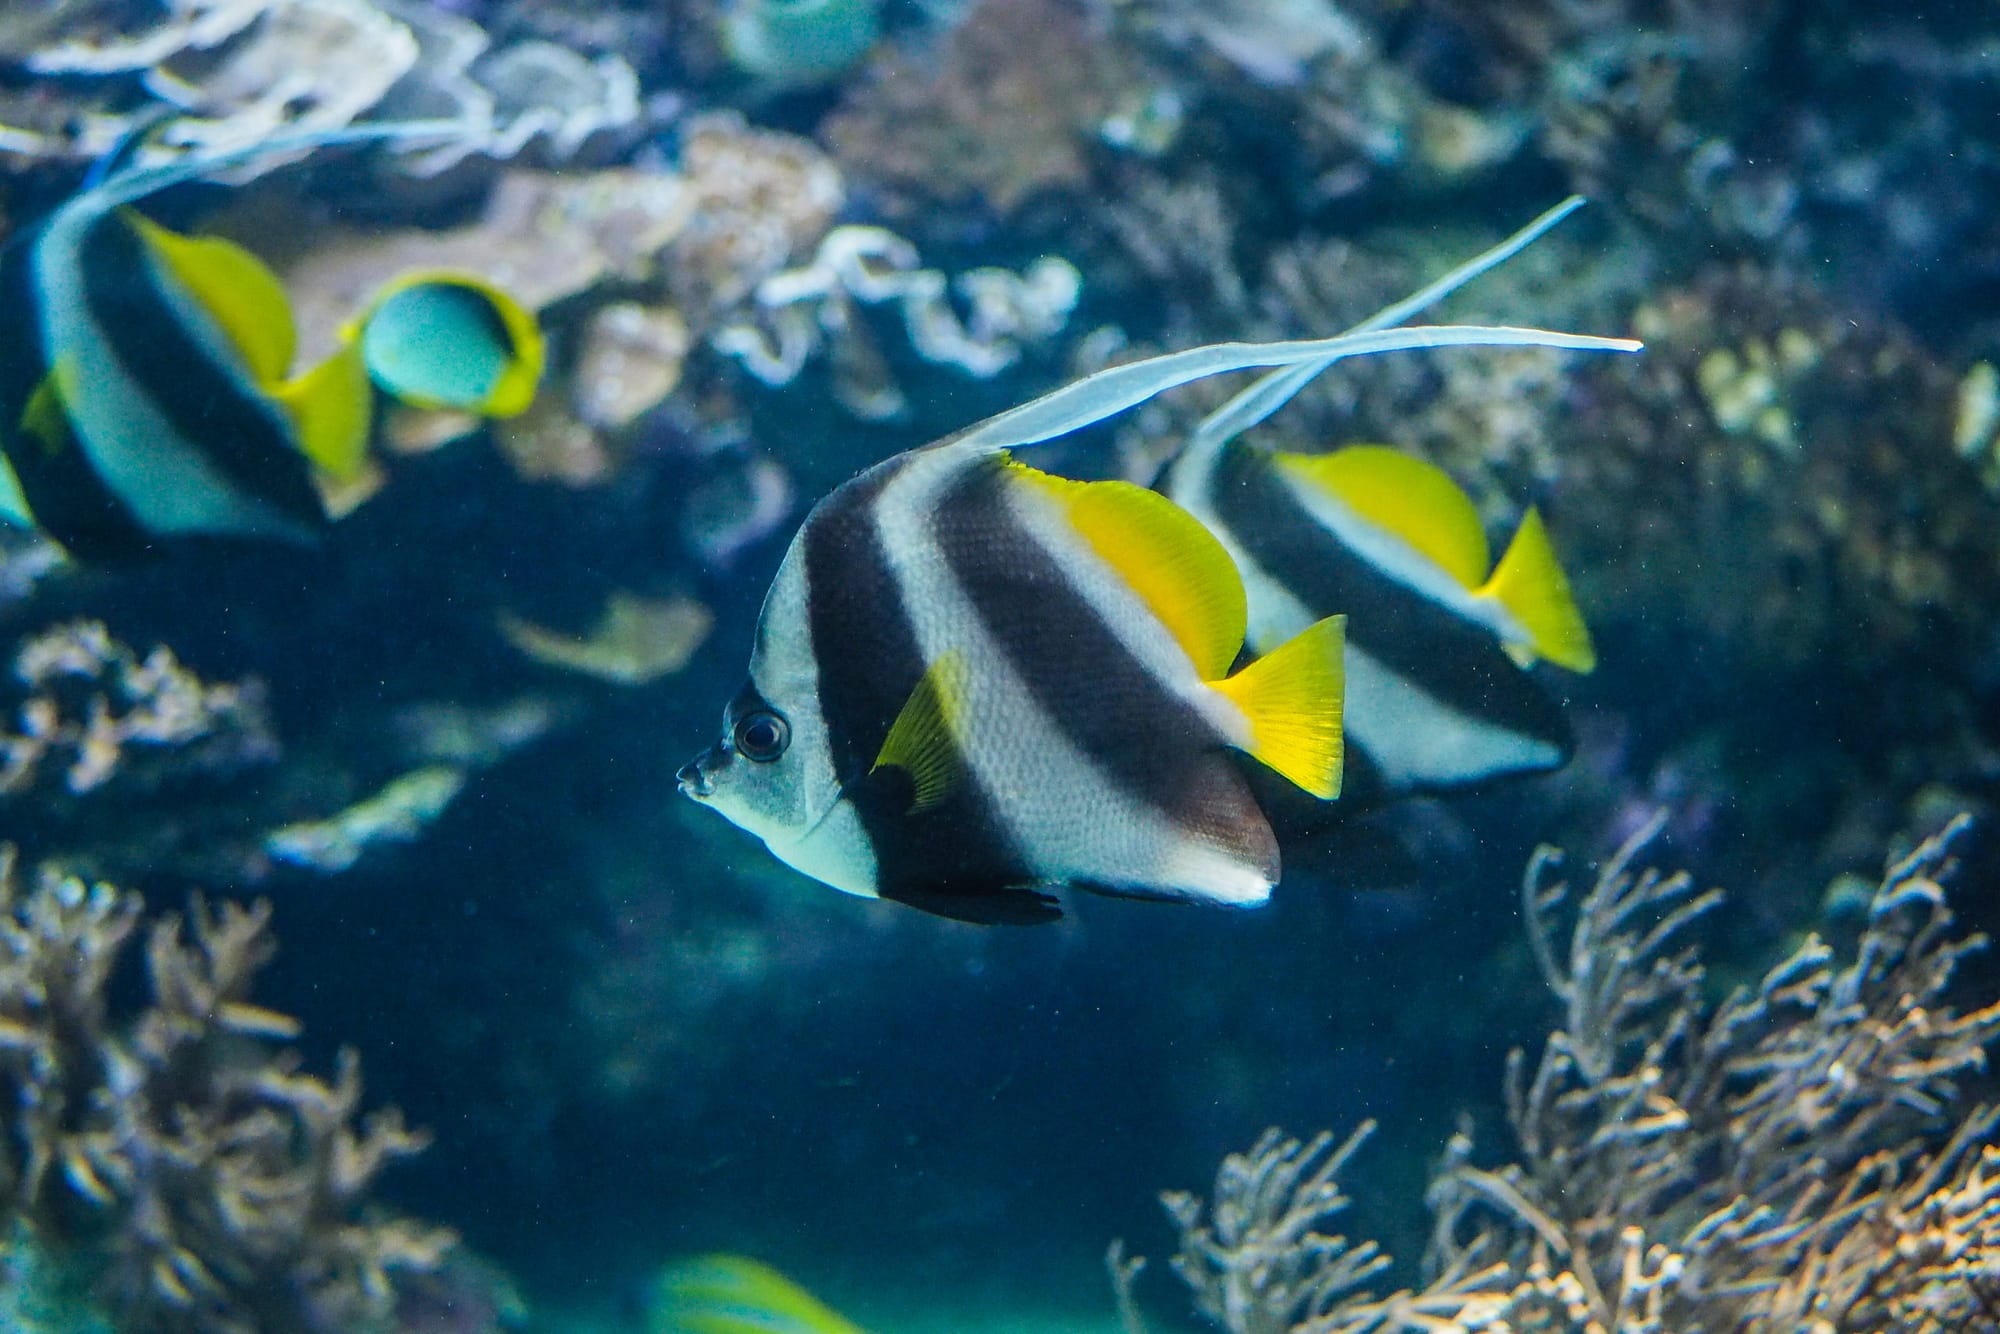 Black, white, and yellow Angelfish in the aquarium.